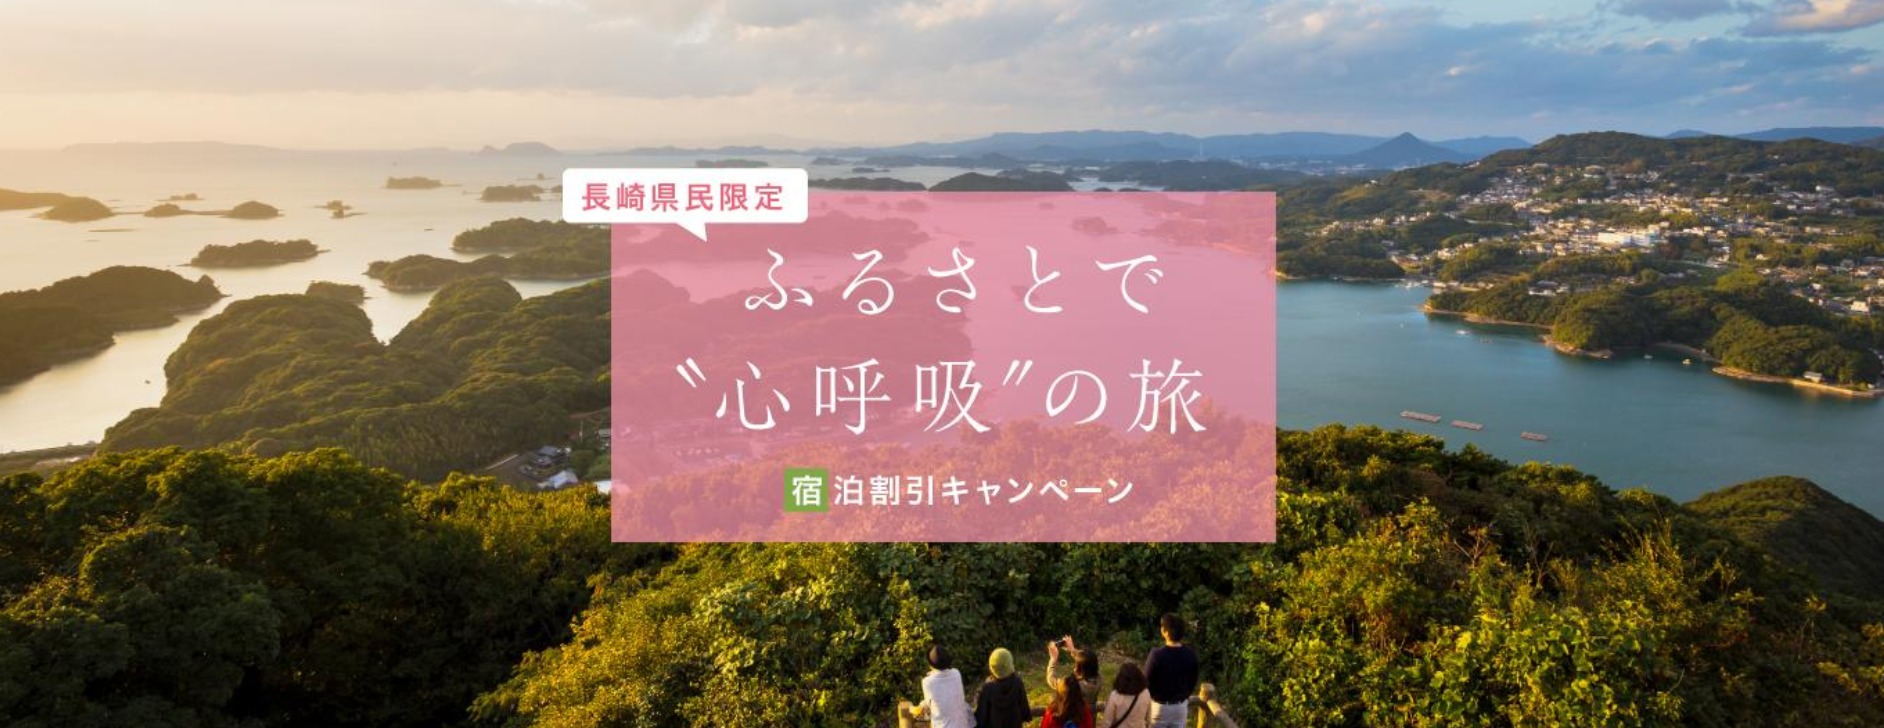 発見 の 再 旅 長崎 ふるさと 観光補助「ふるさと再発見の旅」16日で終了